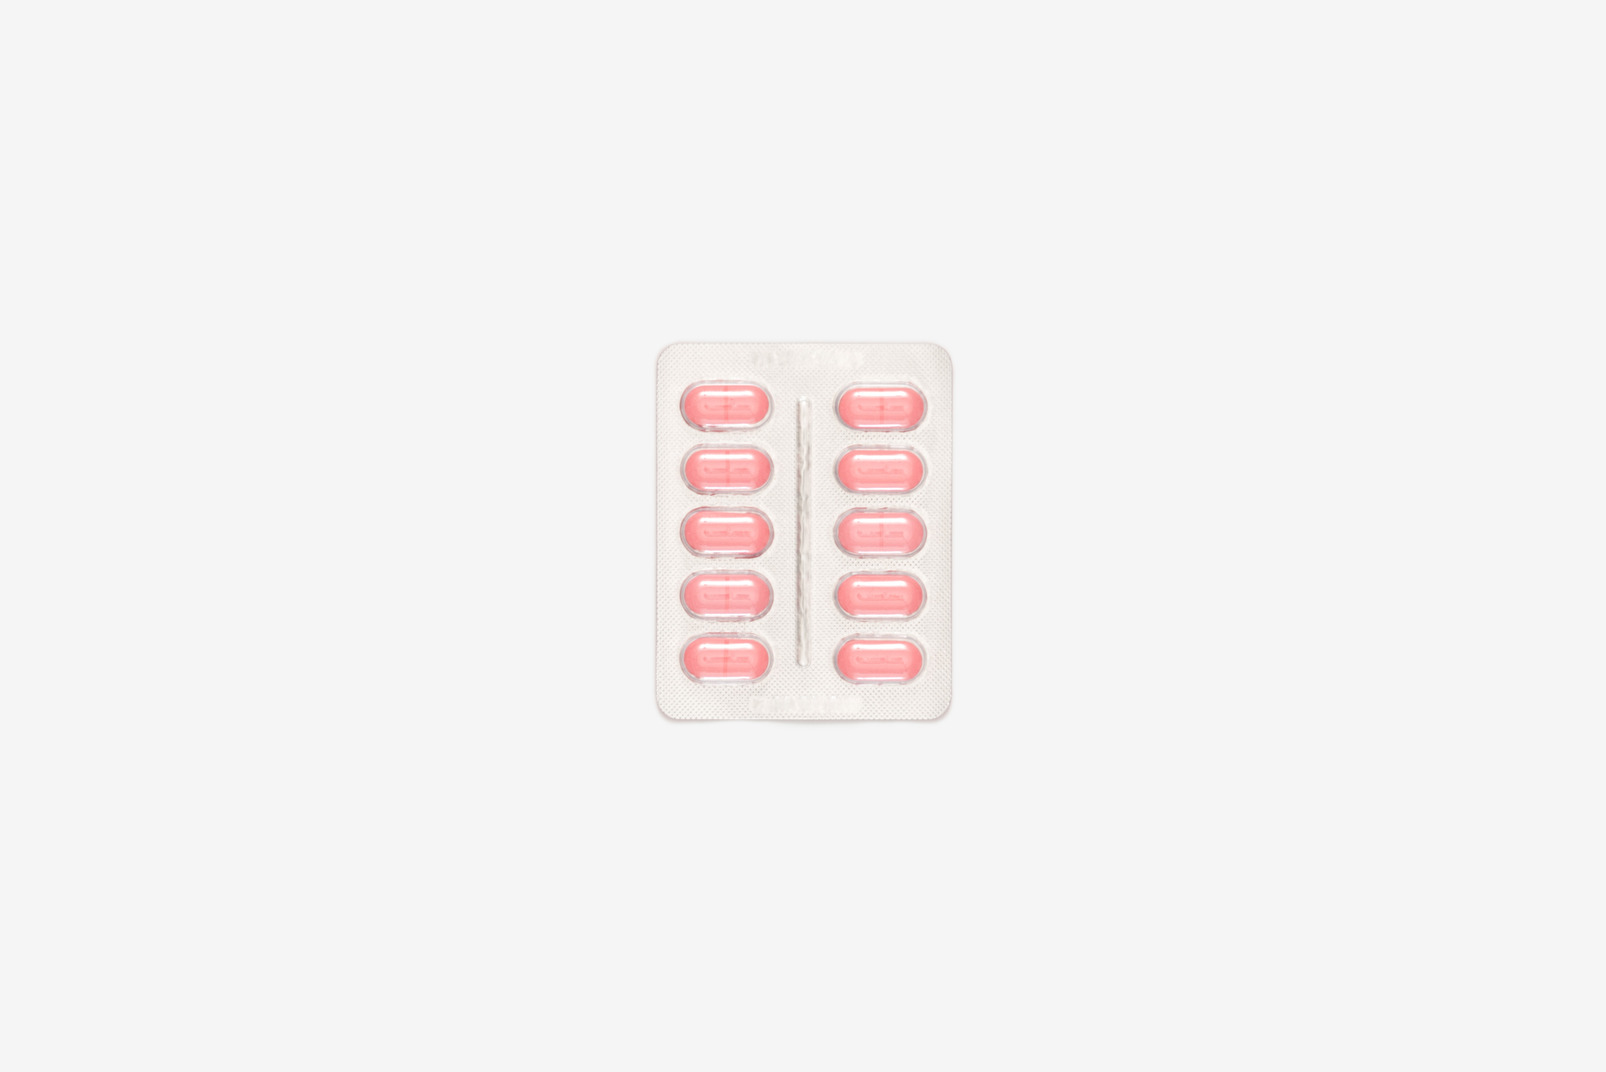 Blister pack of rose pills